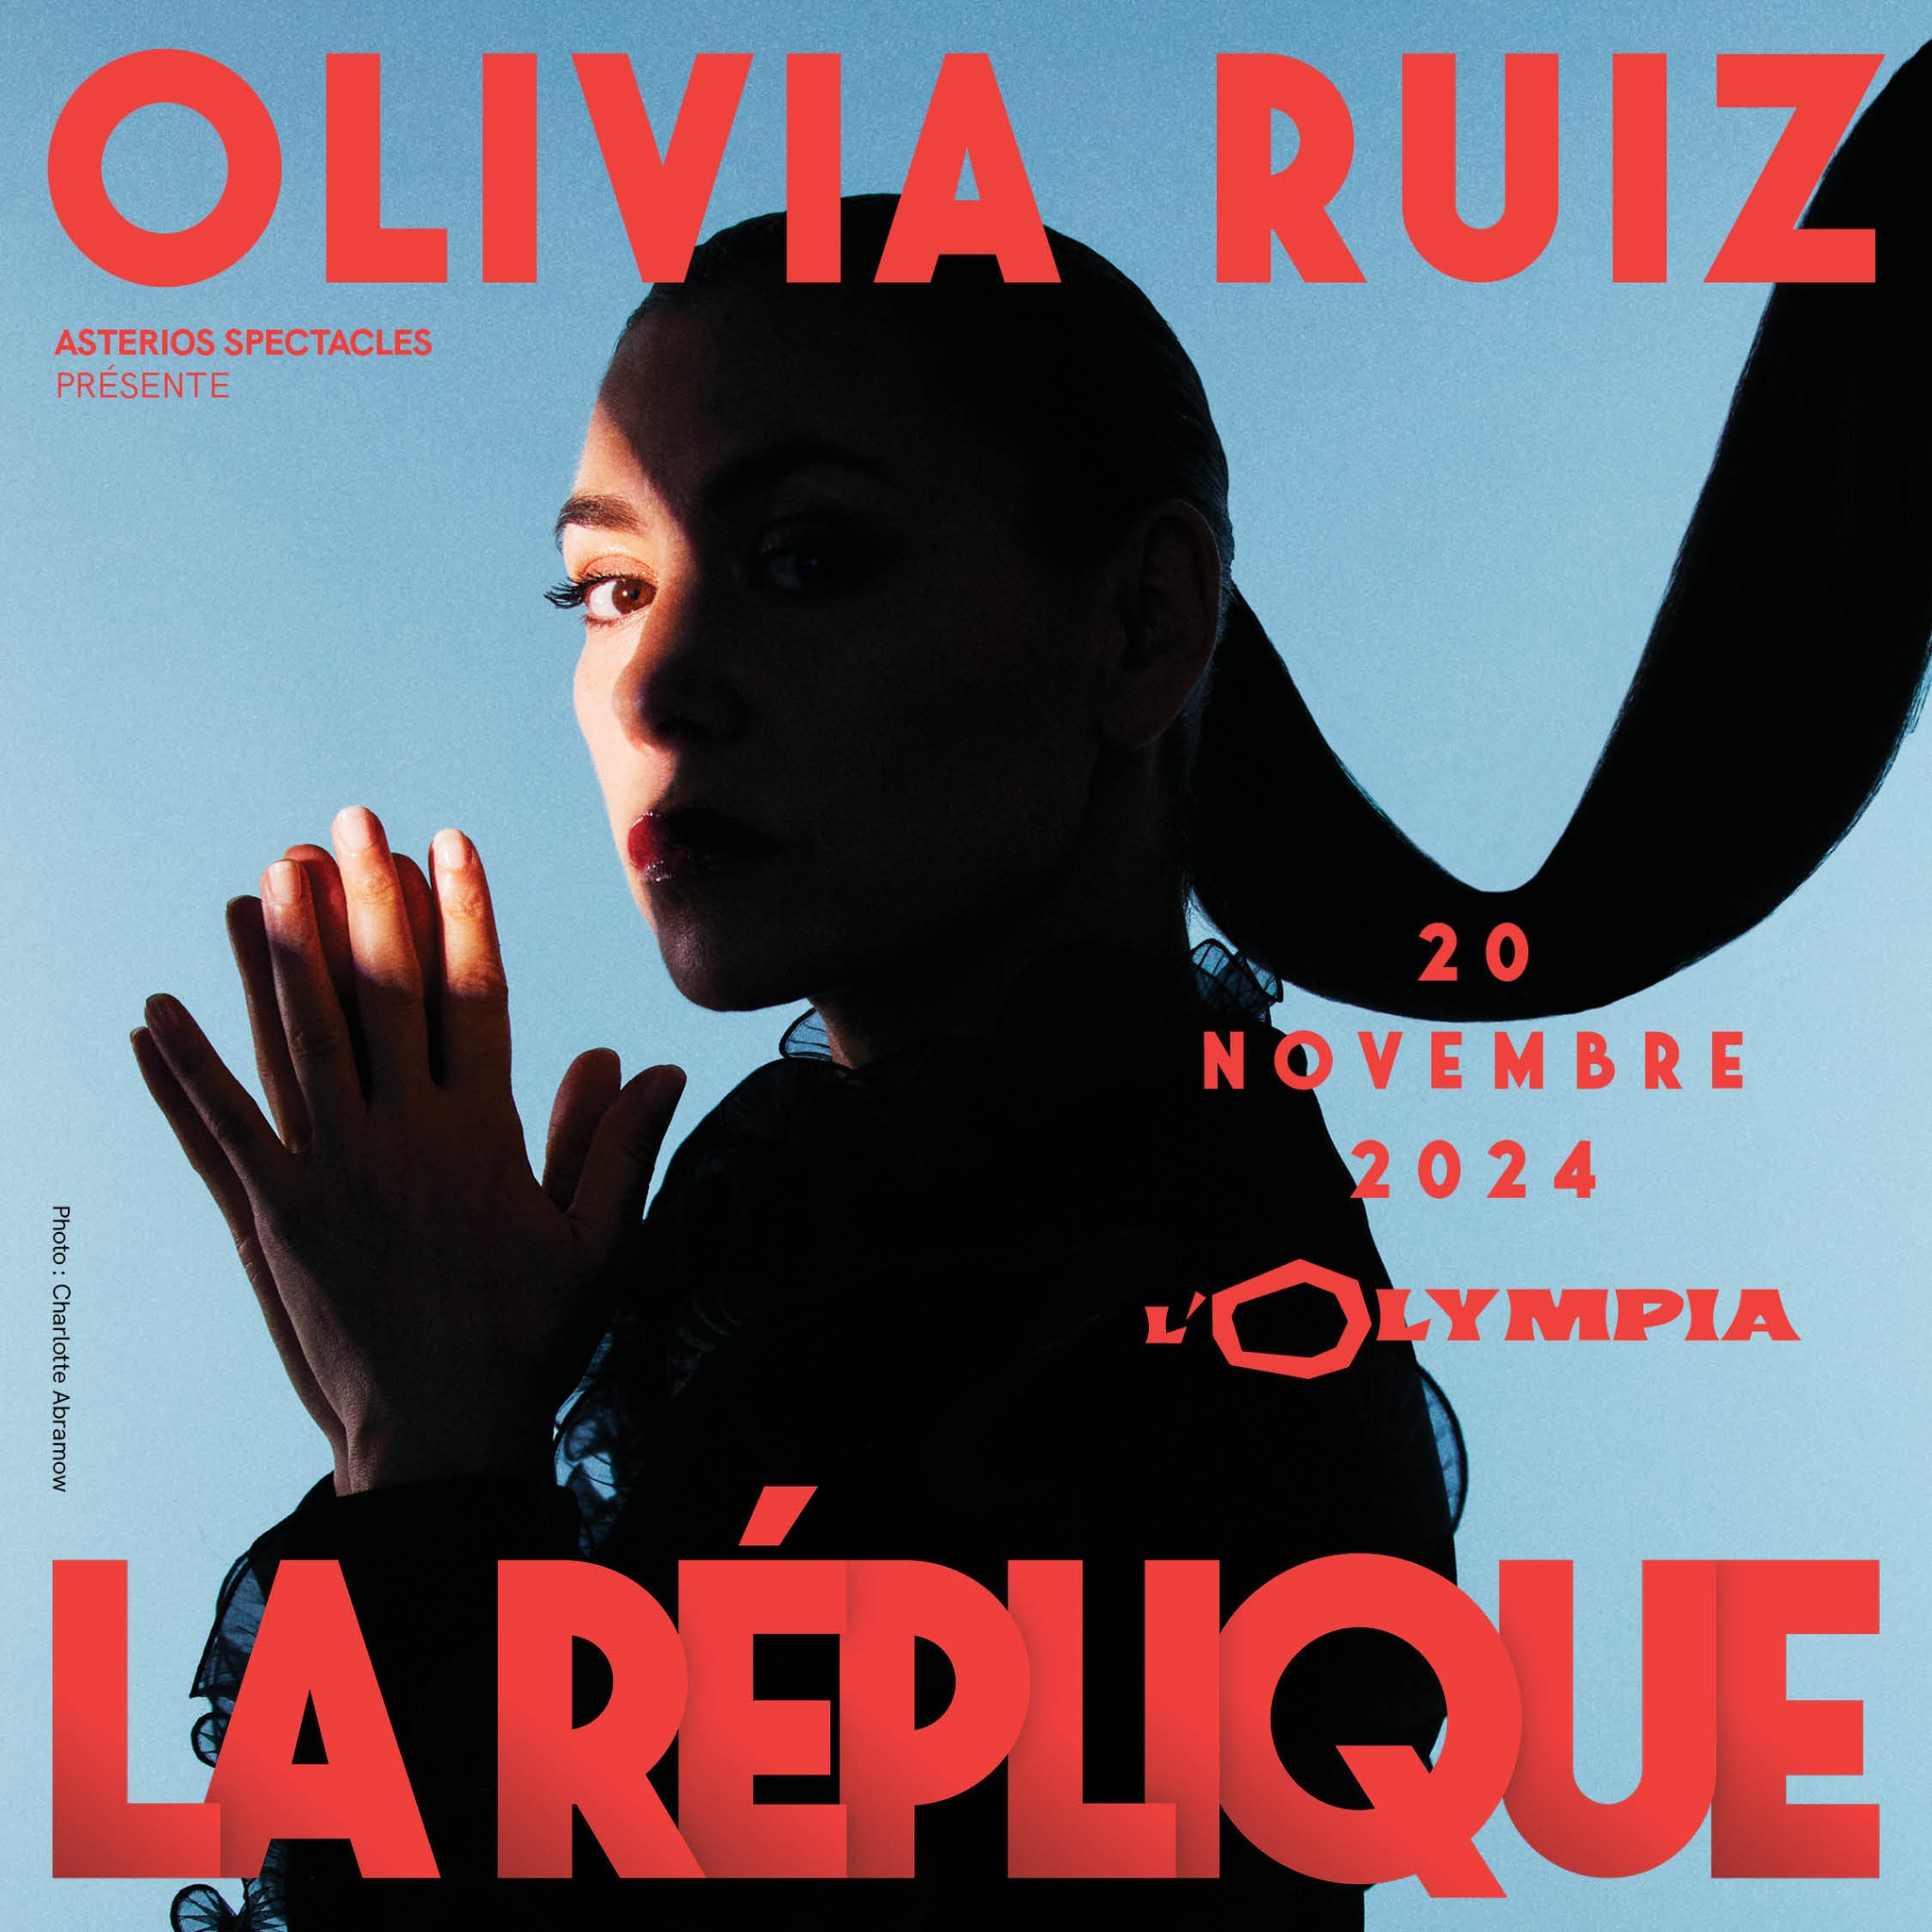 Olivia Ruiz at Olympia Tickets